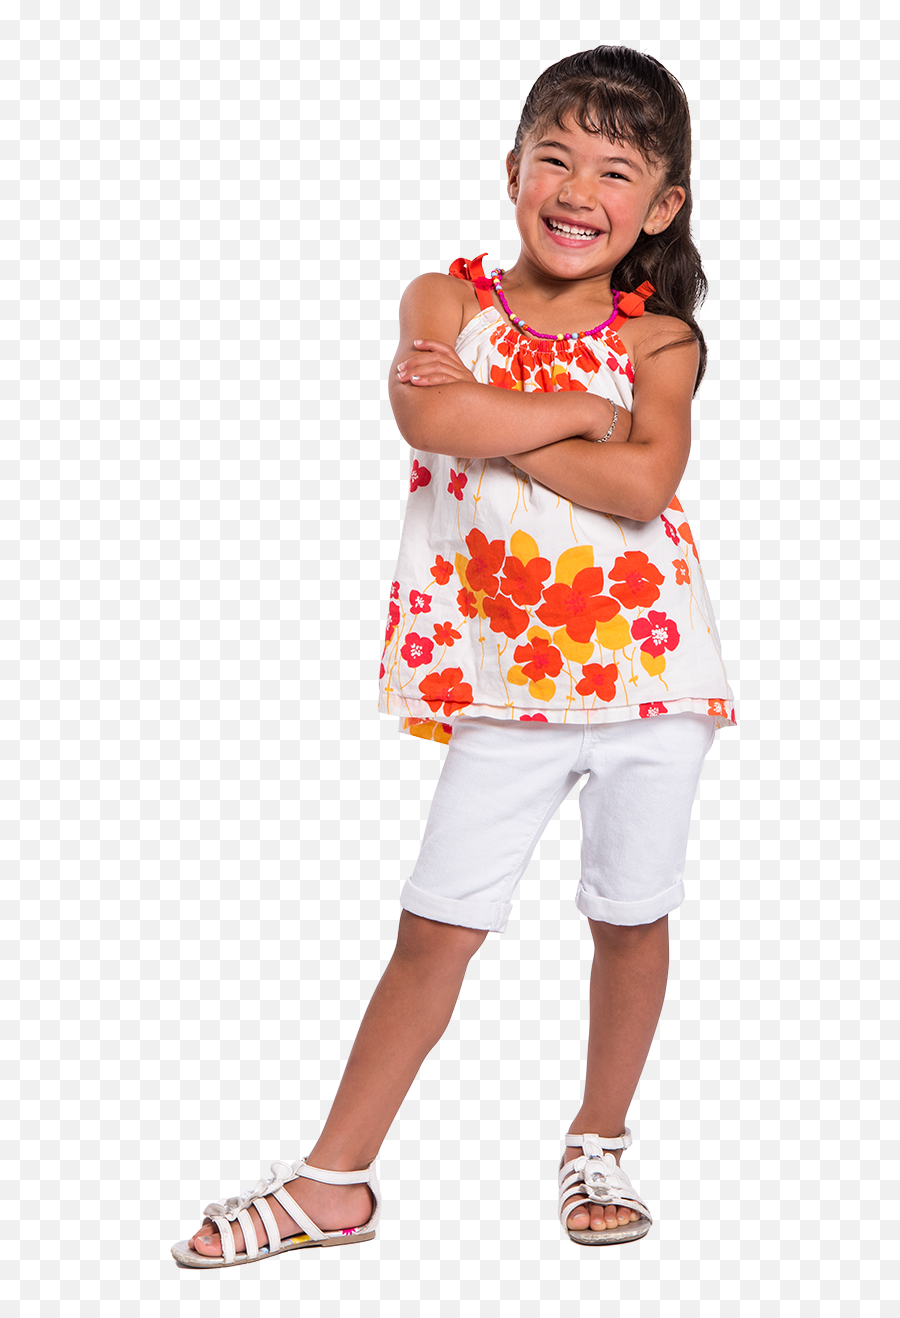 Ohka Kid Image Camilla - Bermuda Shorts Emoji,Toddler Png